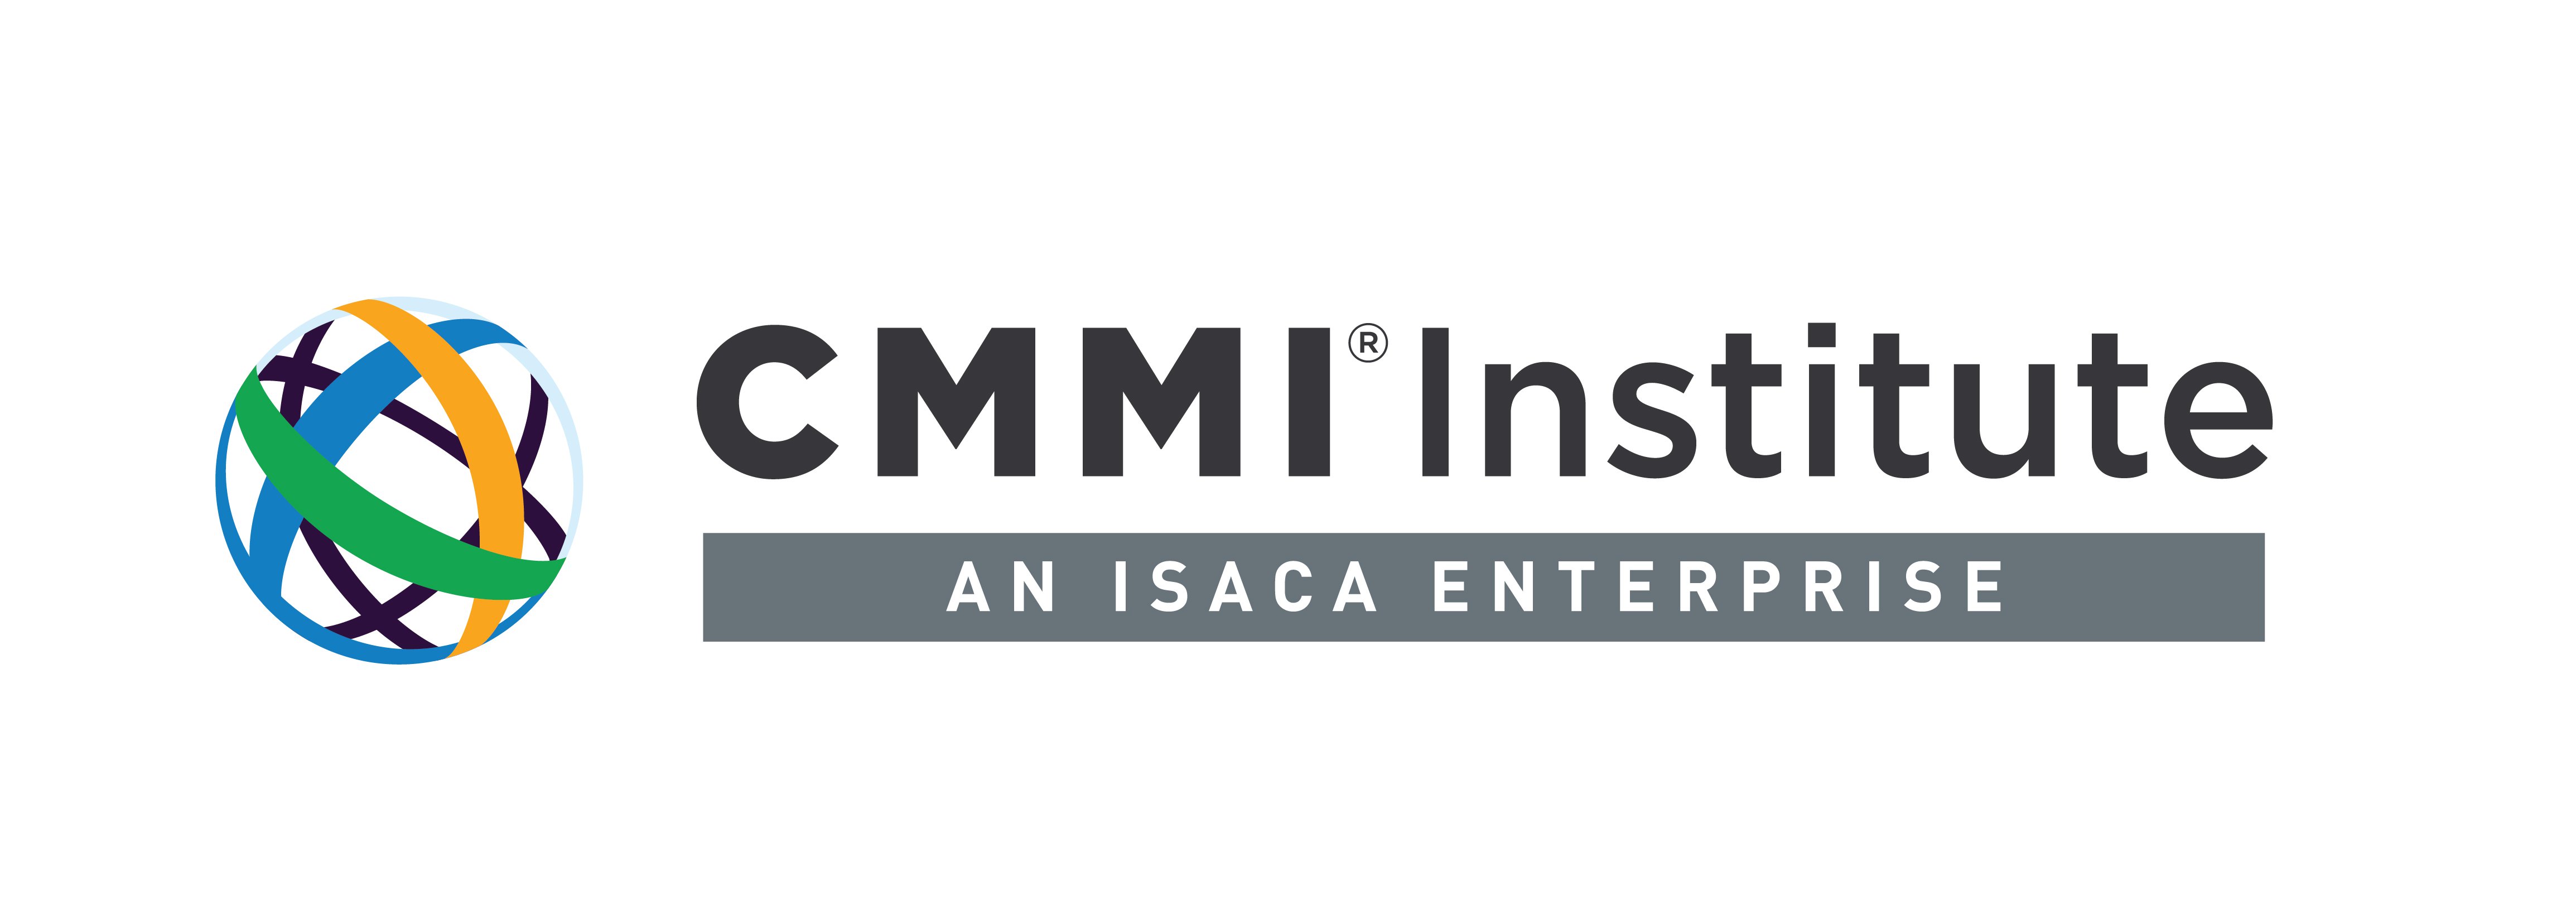 CMMI Institute Company Logo